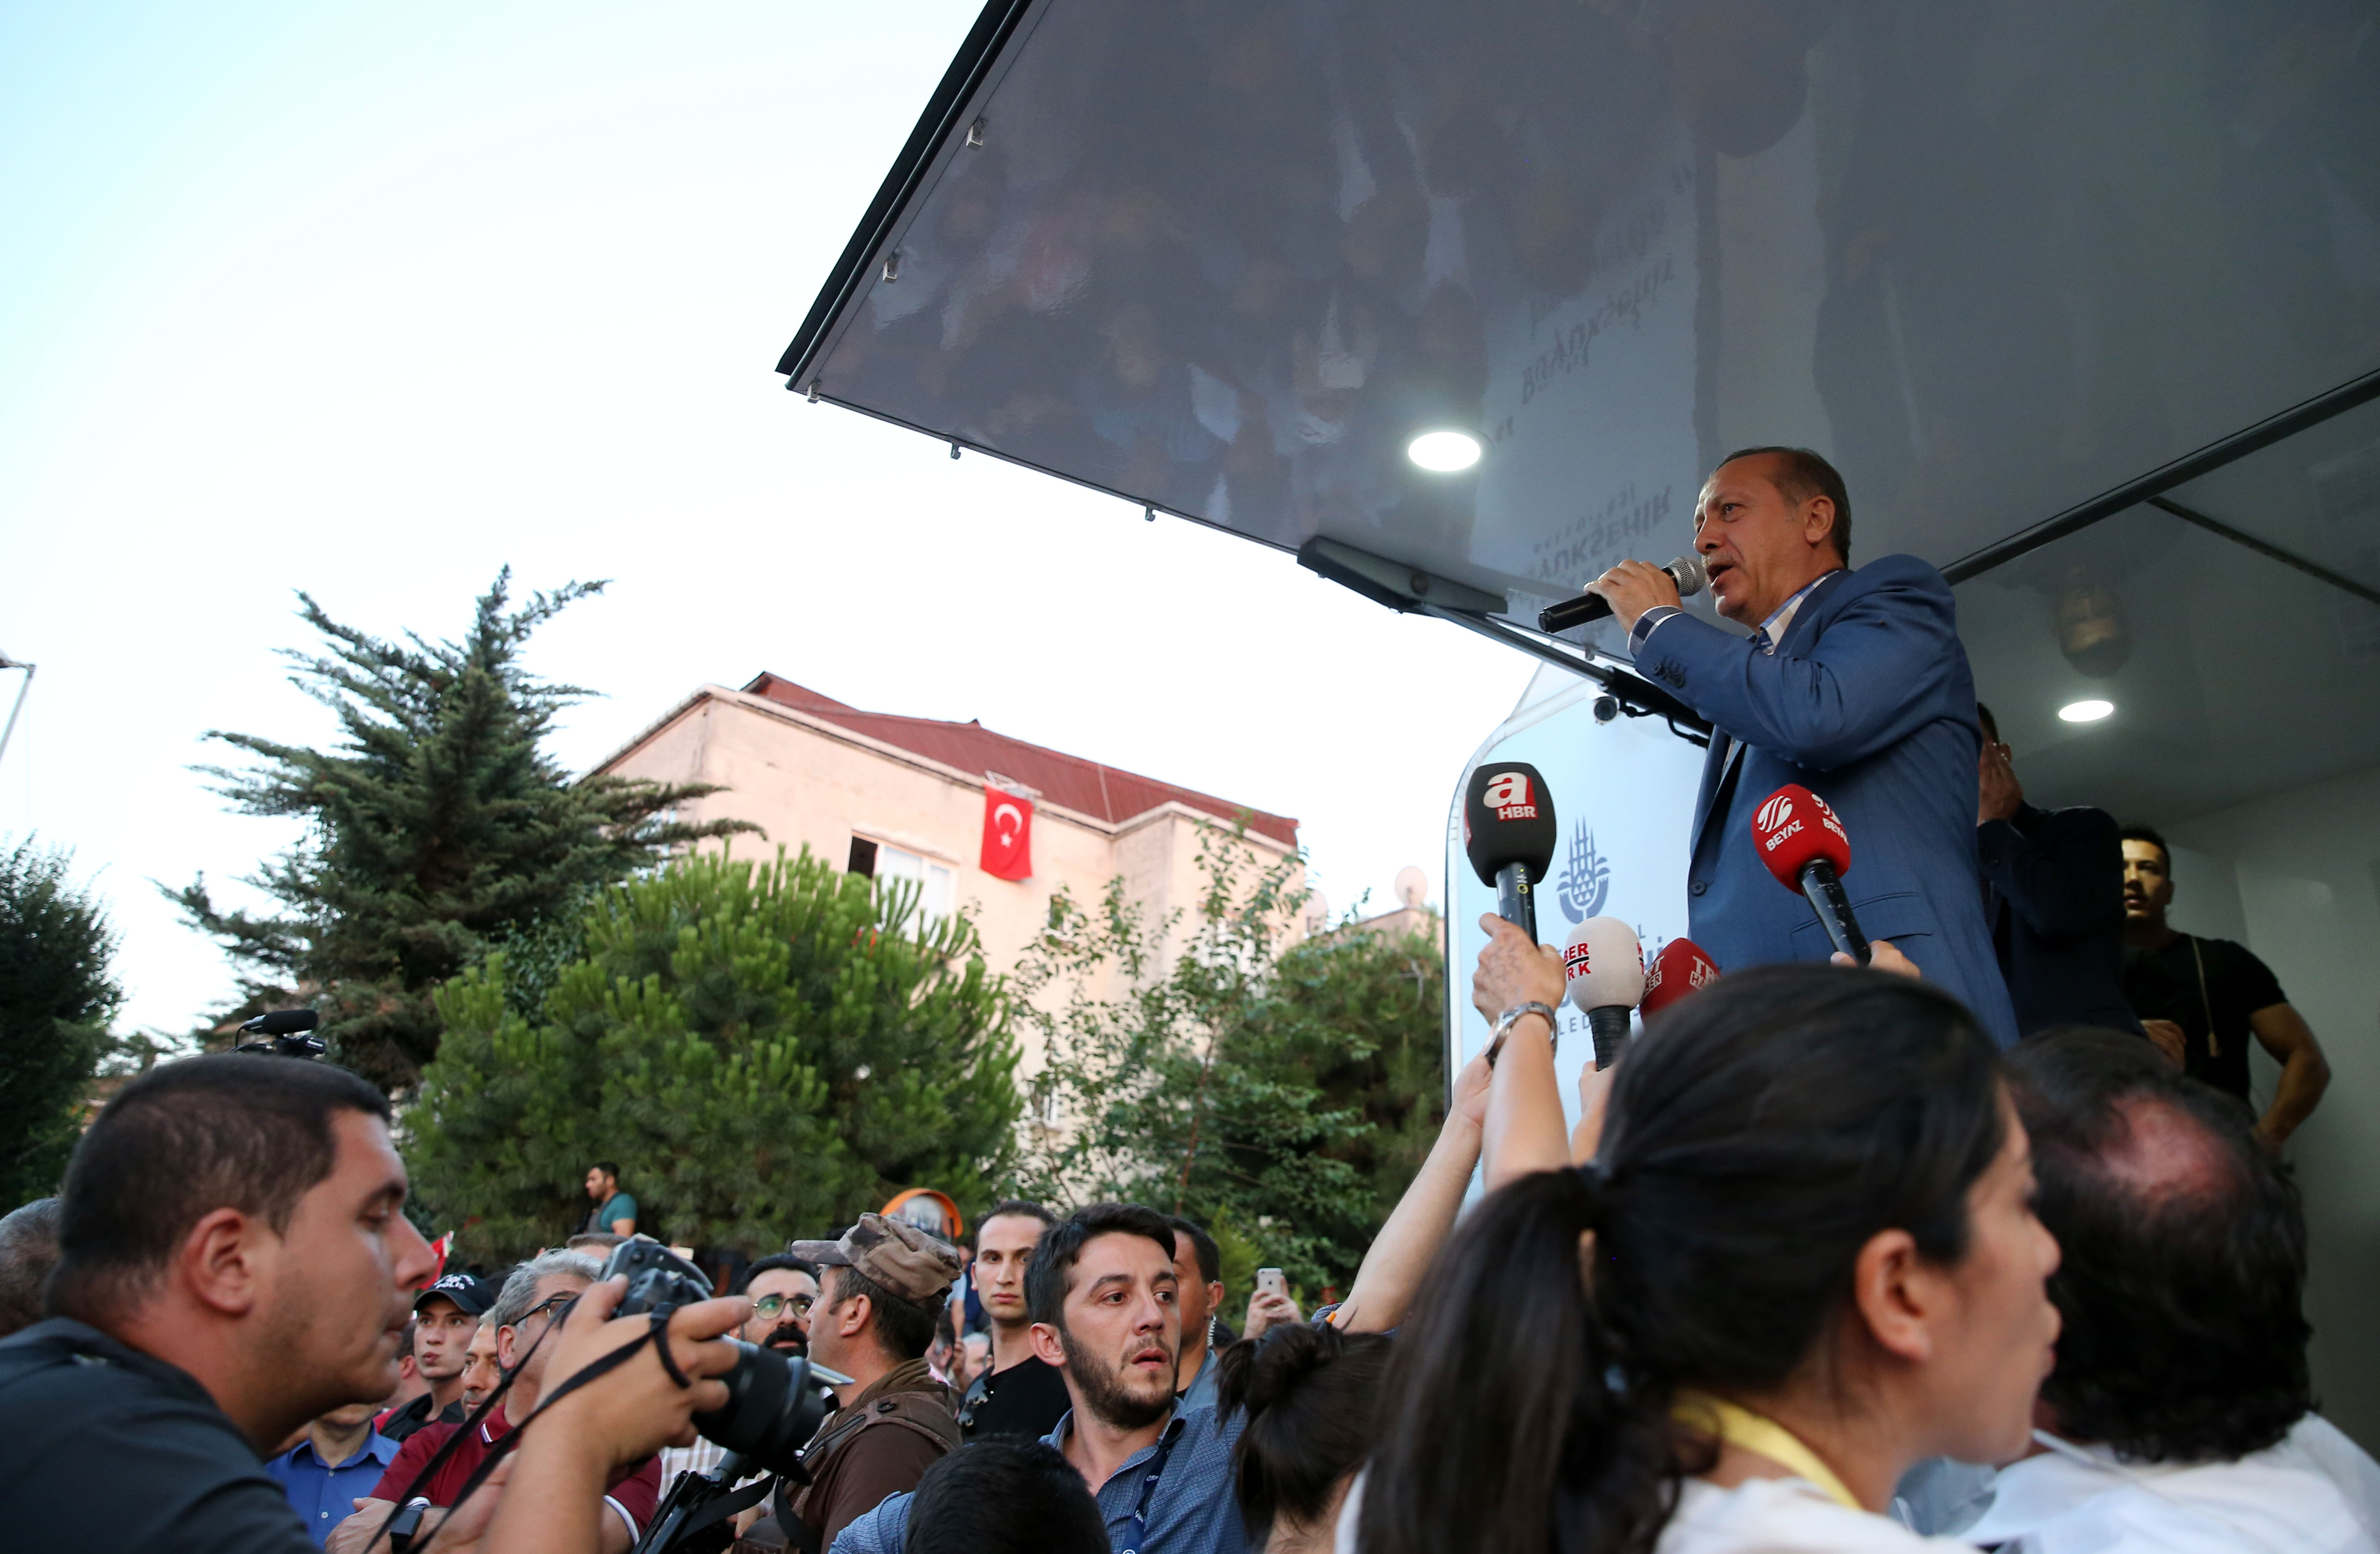 توجه رئيس الجمهورية أردوغان الذي خرج من فندق مطار أتاتورك متوجهاً لمنزله في قيصقلي بالحديث للمواطنين الذي استقبلوه بالأعلام التركية.